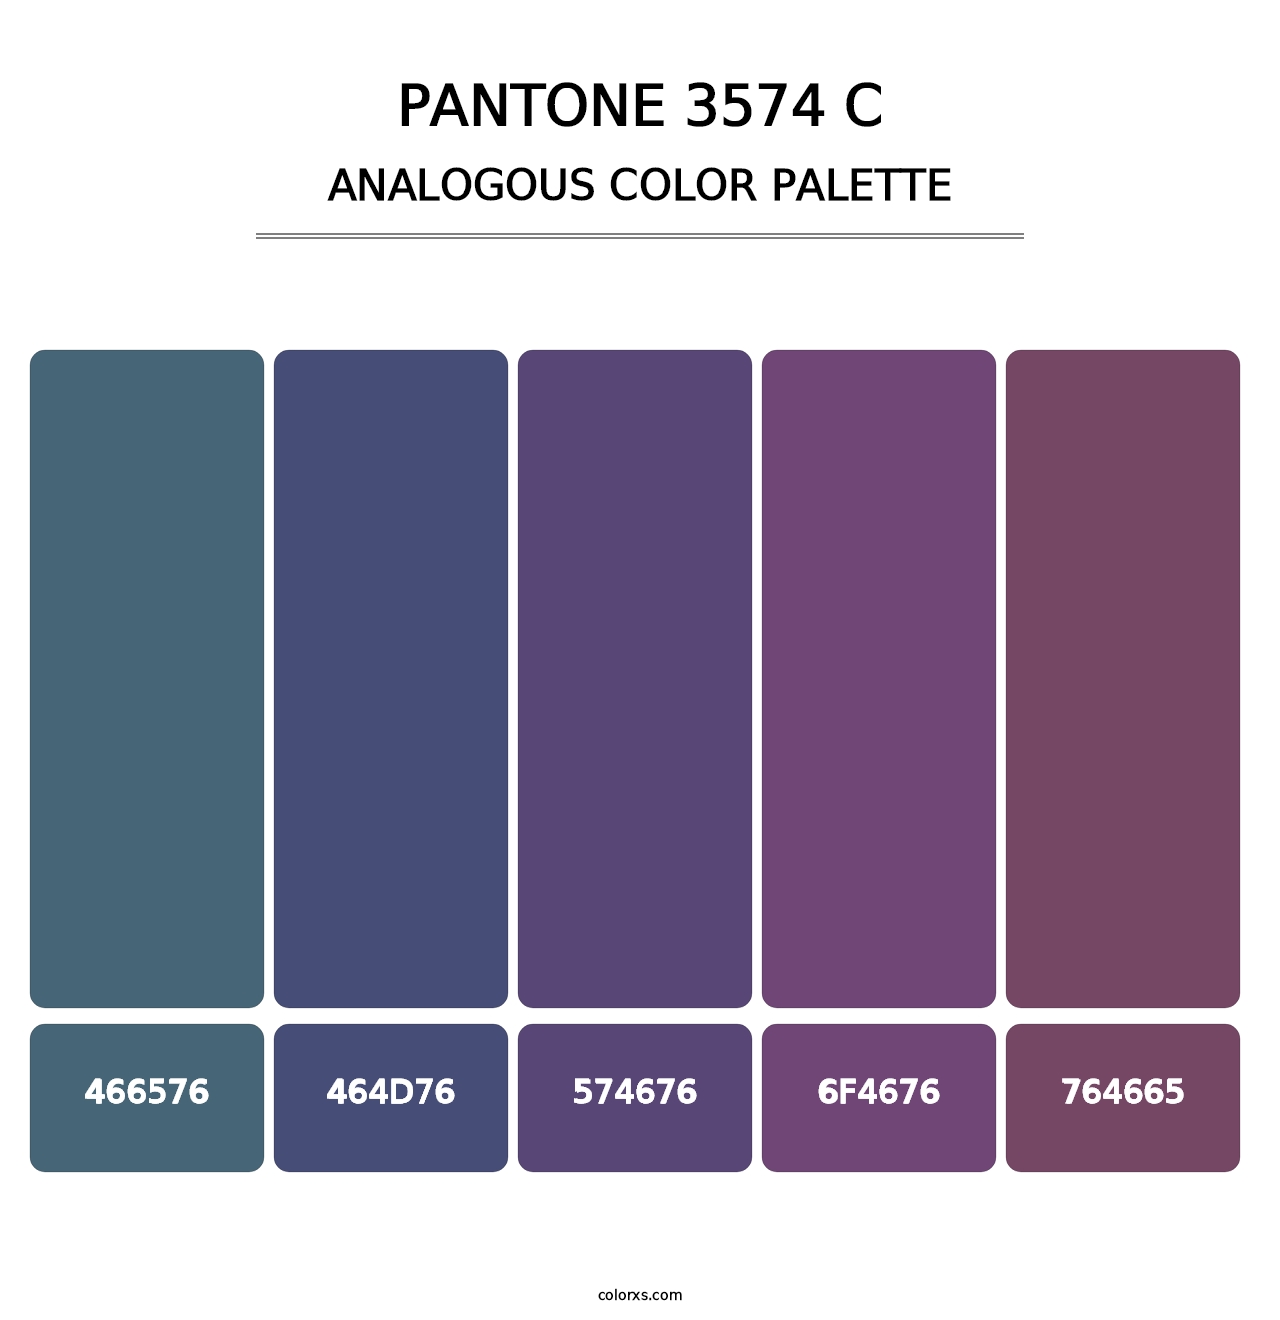 PANTONE 3574 C - Analogous Color Palette